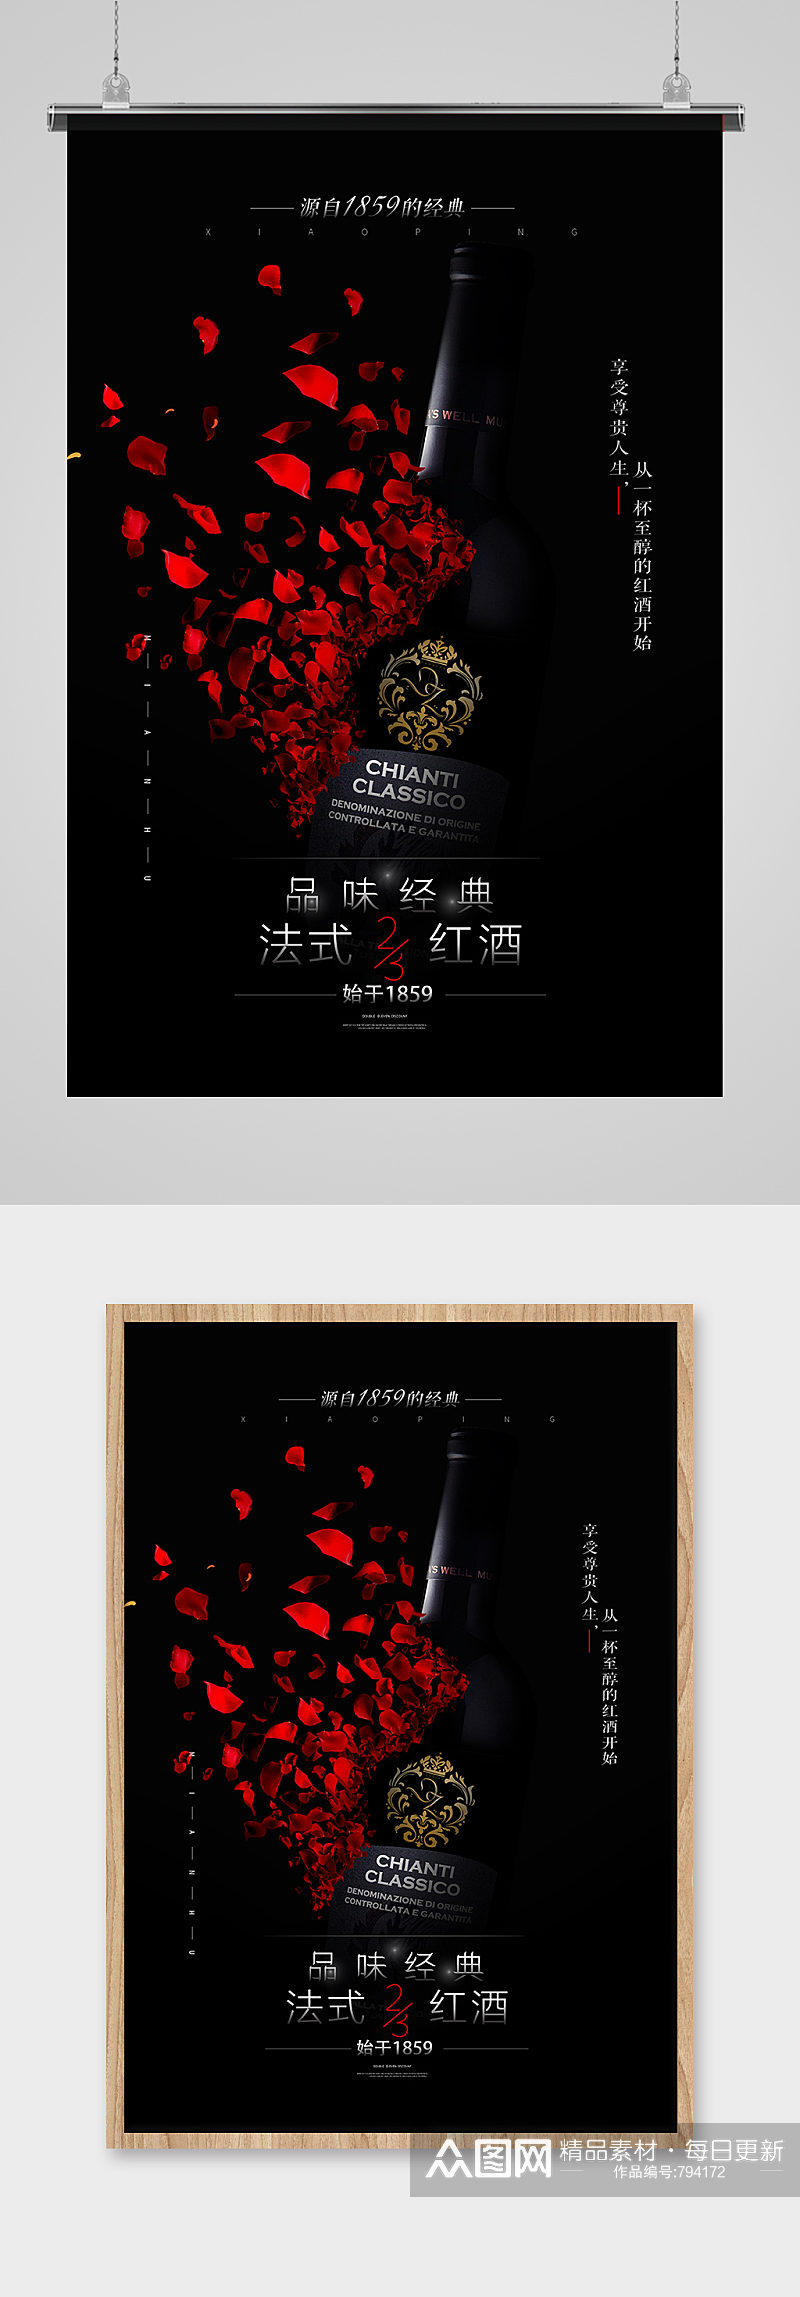 黑色高端红酒葡萄酒宣传海报设计素材